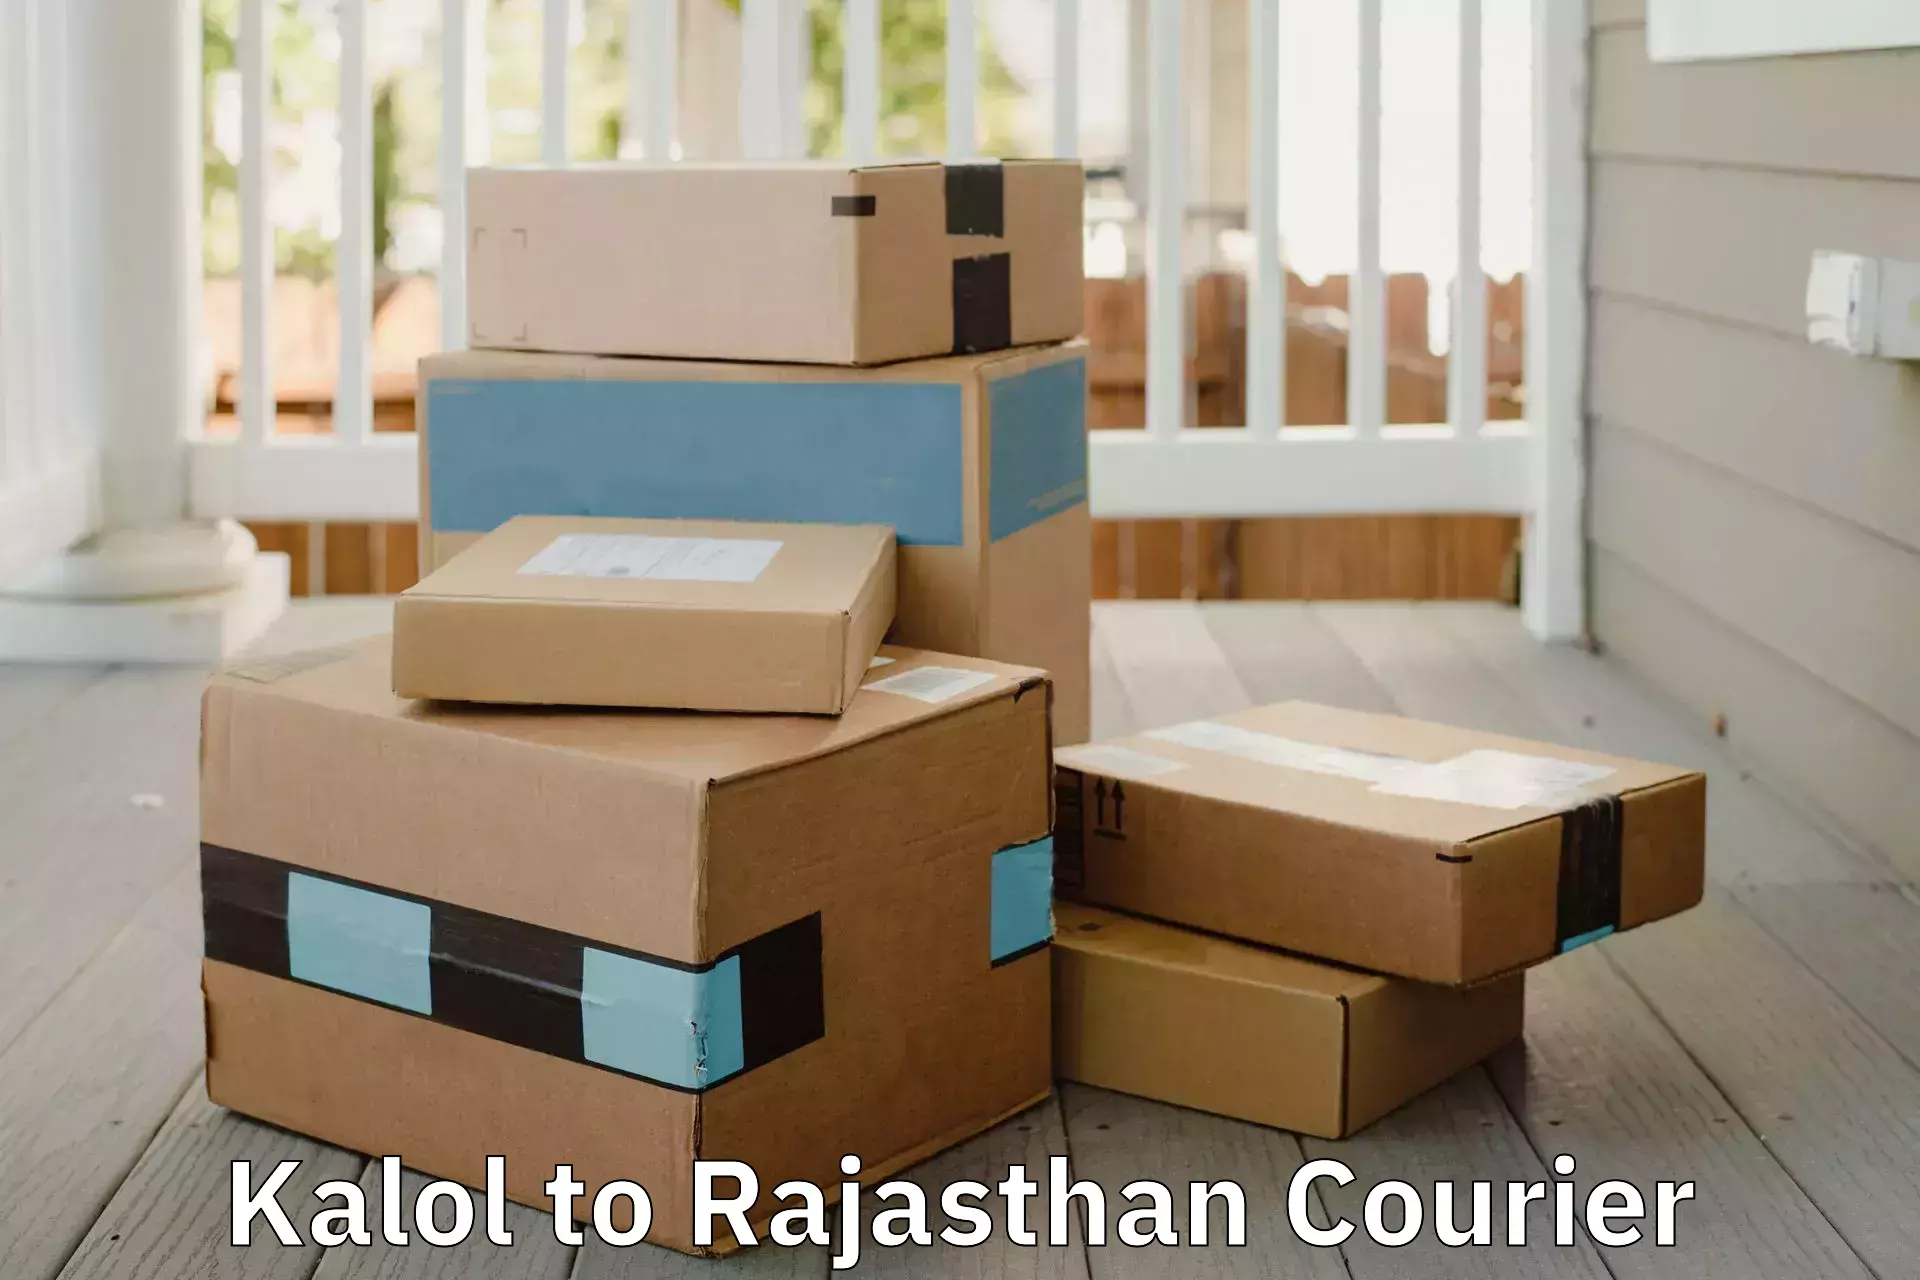 Furniture transport services Kalol to Rajasthan